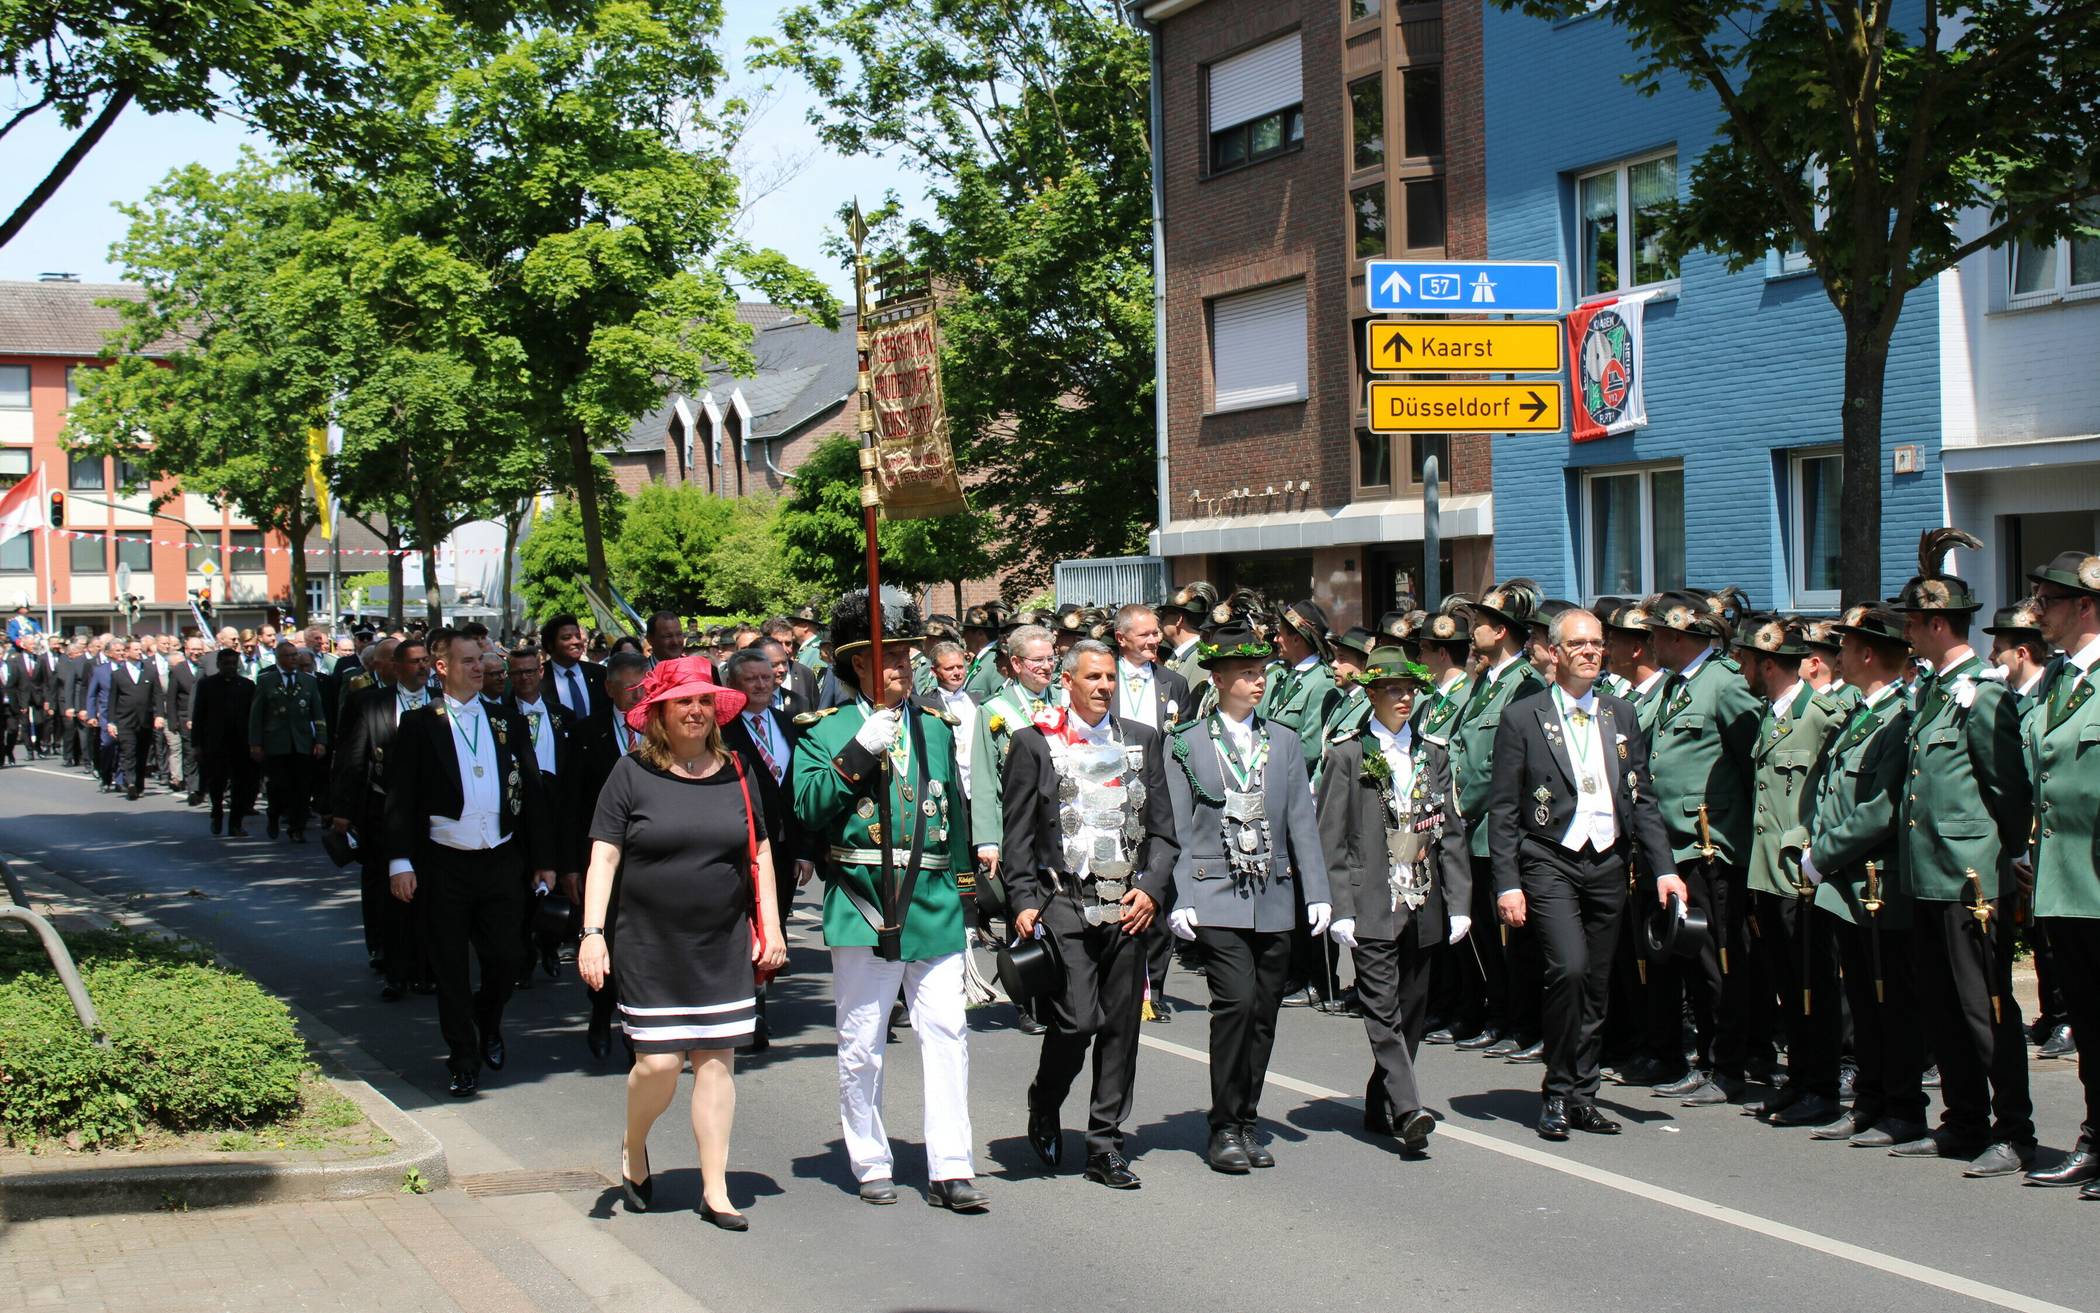 Königsparade auf der Furth zu Ehren von Michael I. Feldmann